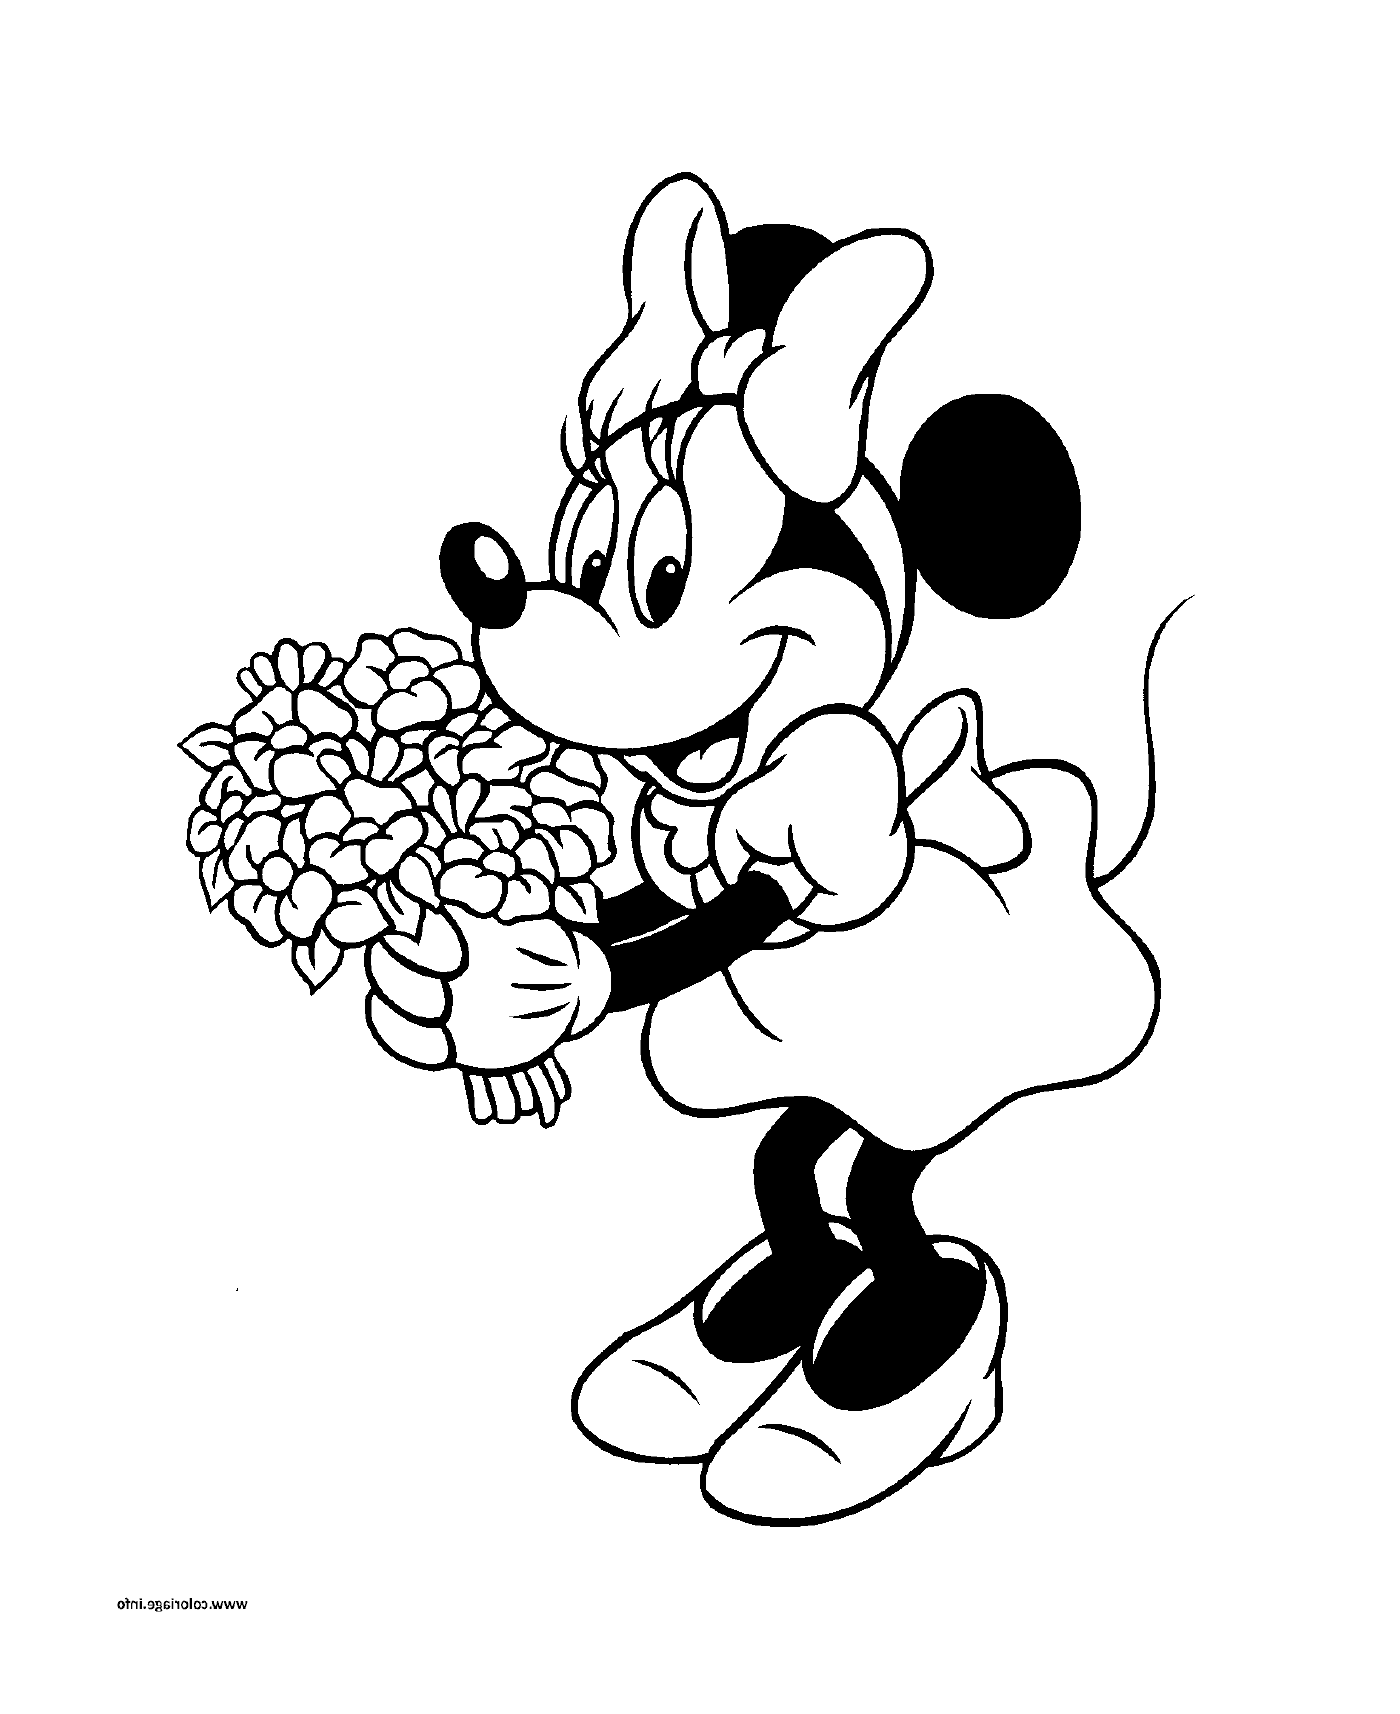  小米老鼠有一束花束花 